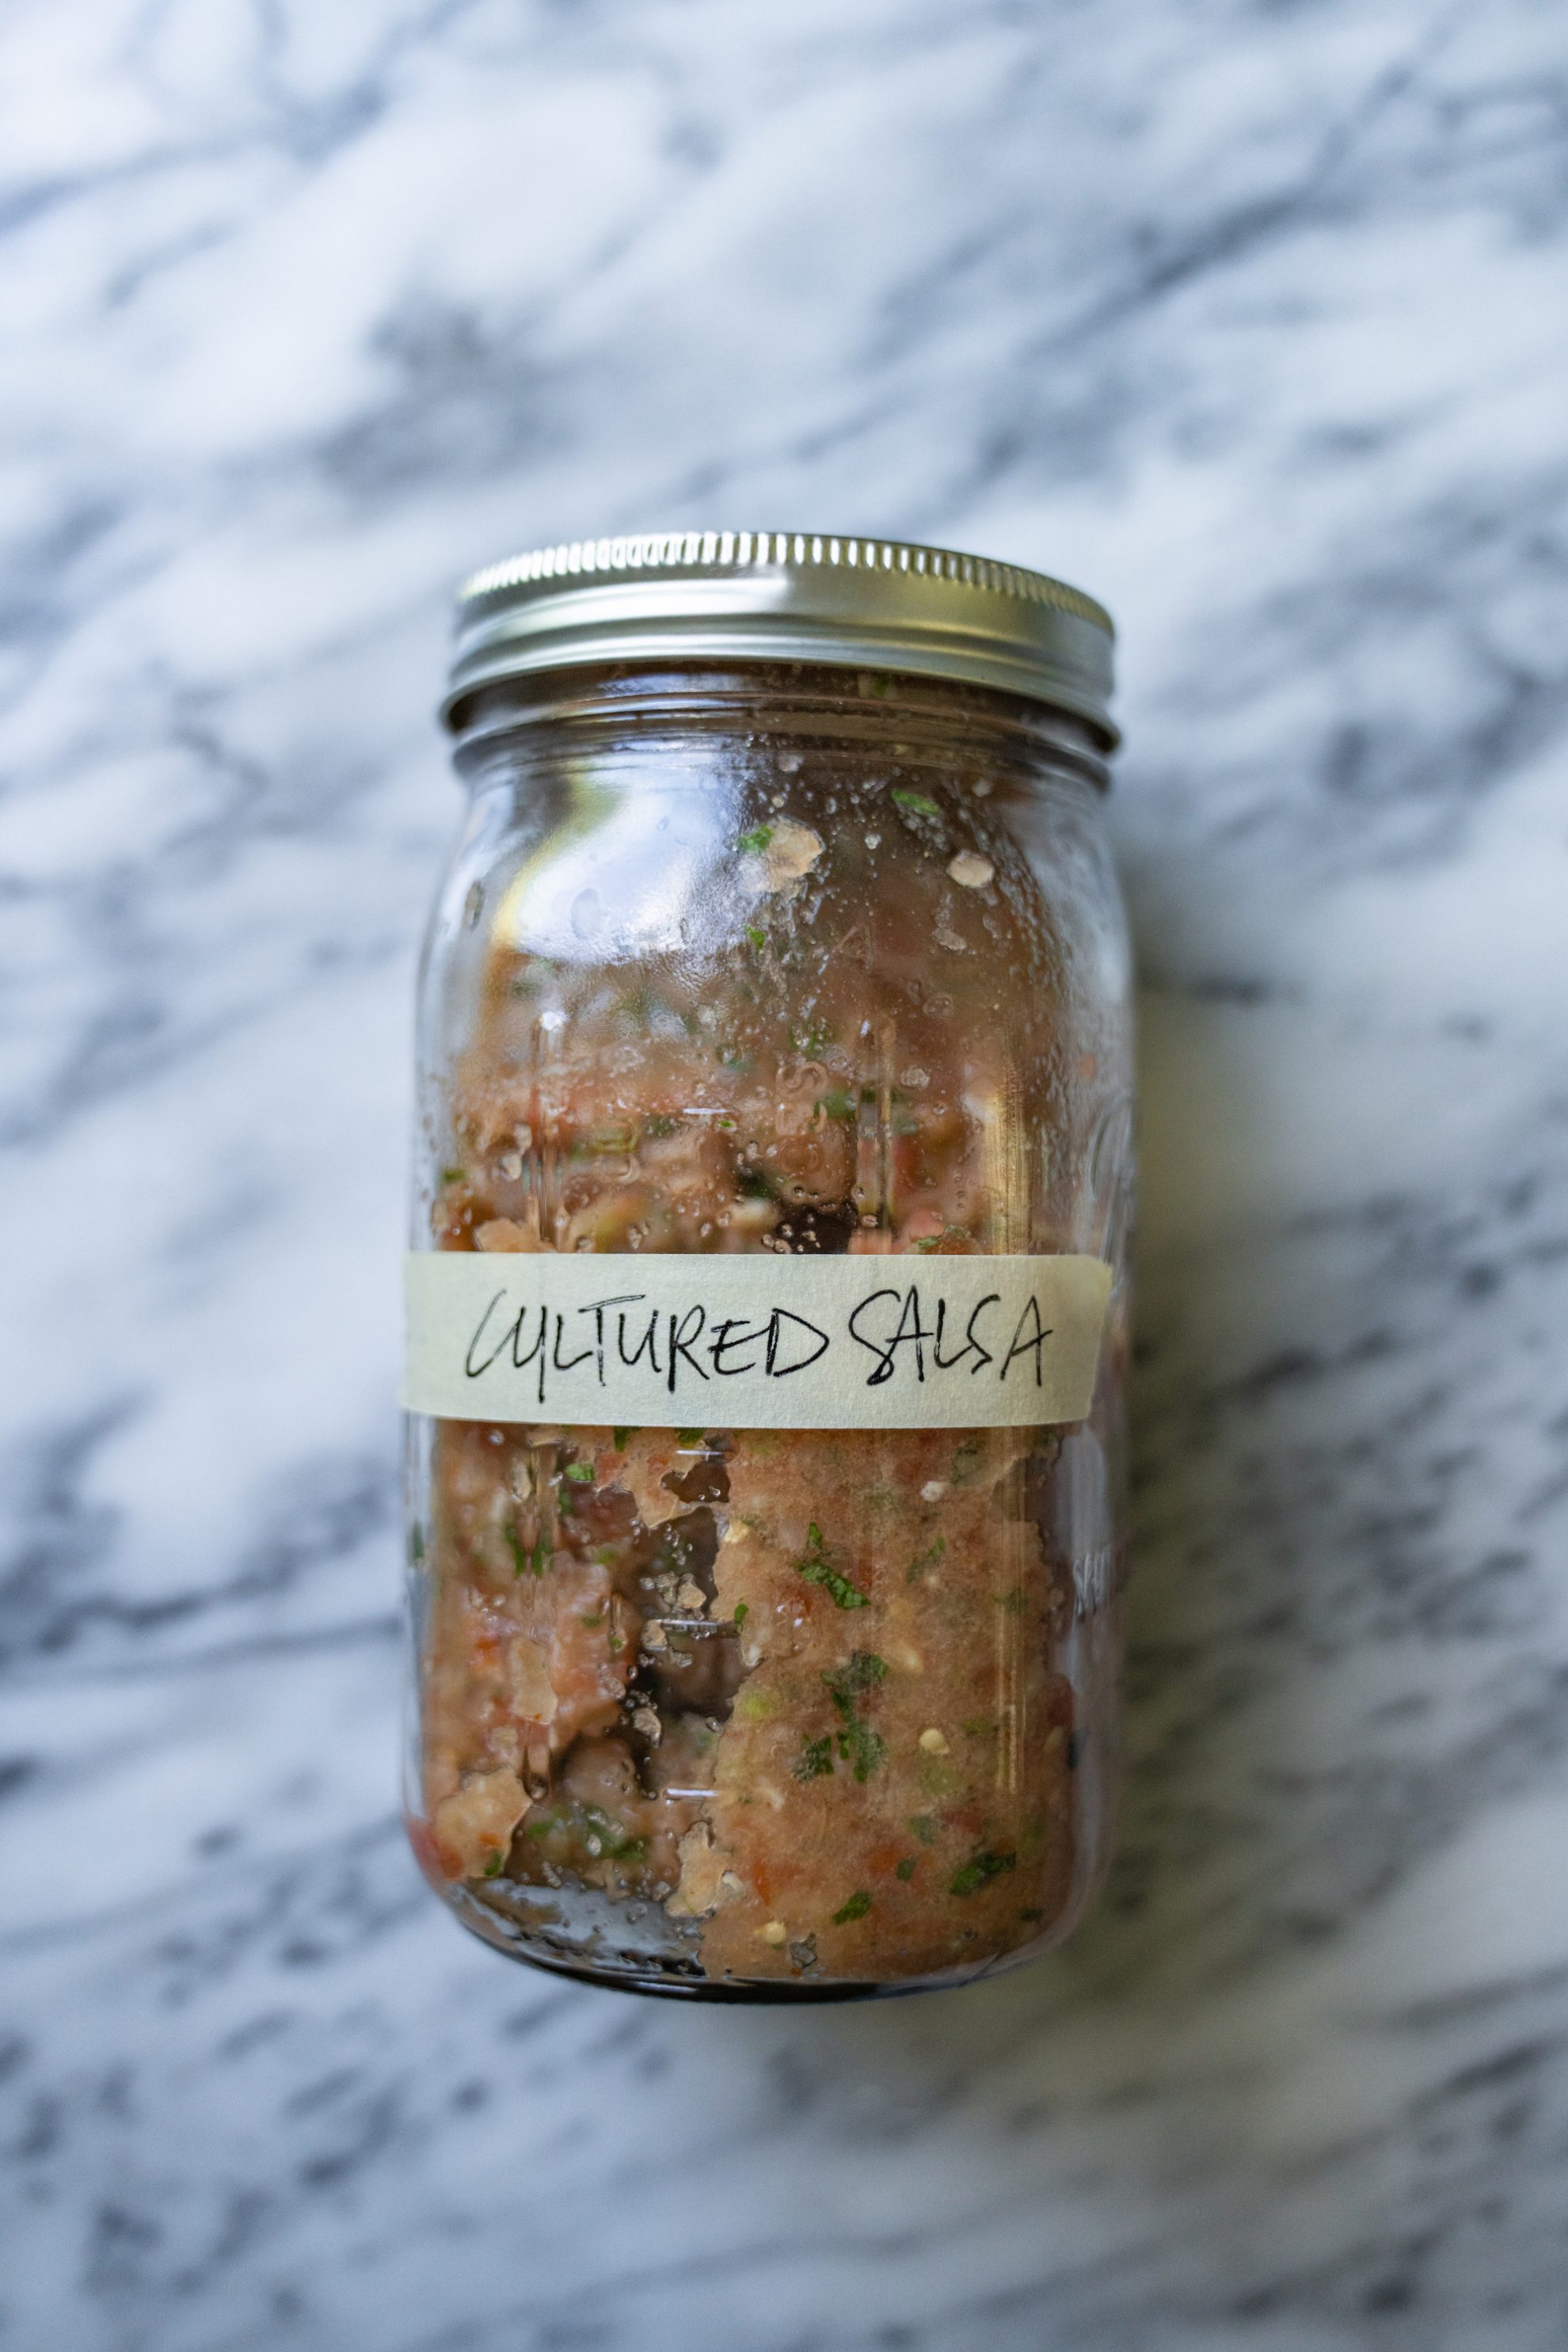 Cultured salsa in a jar